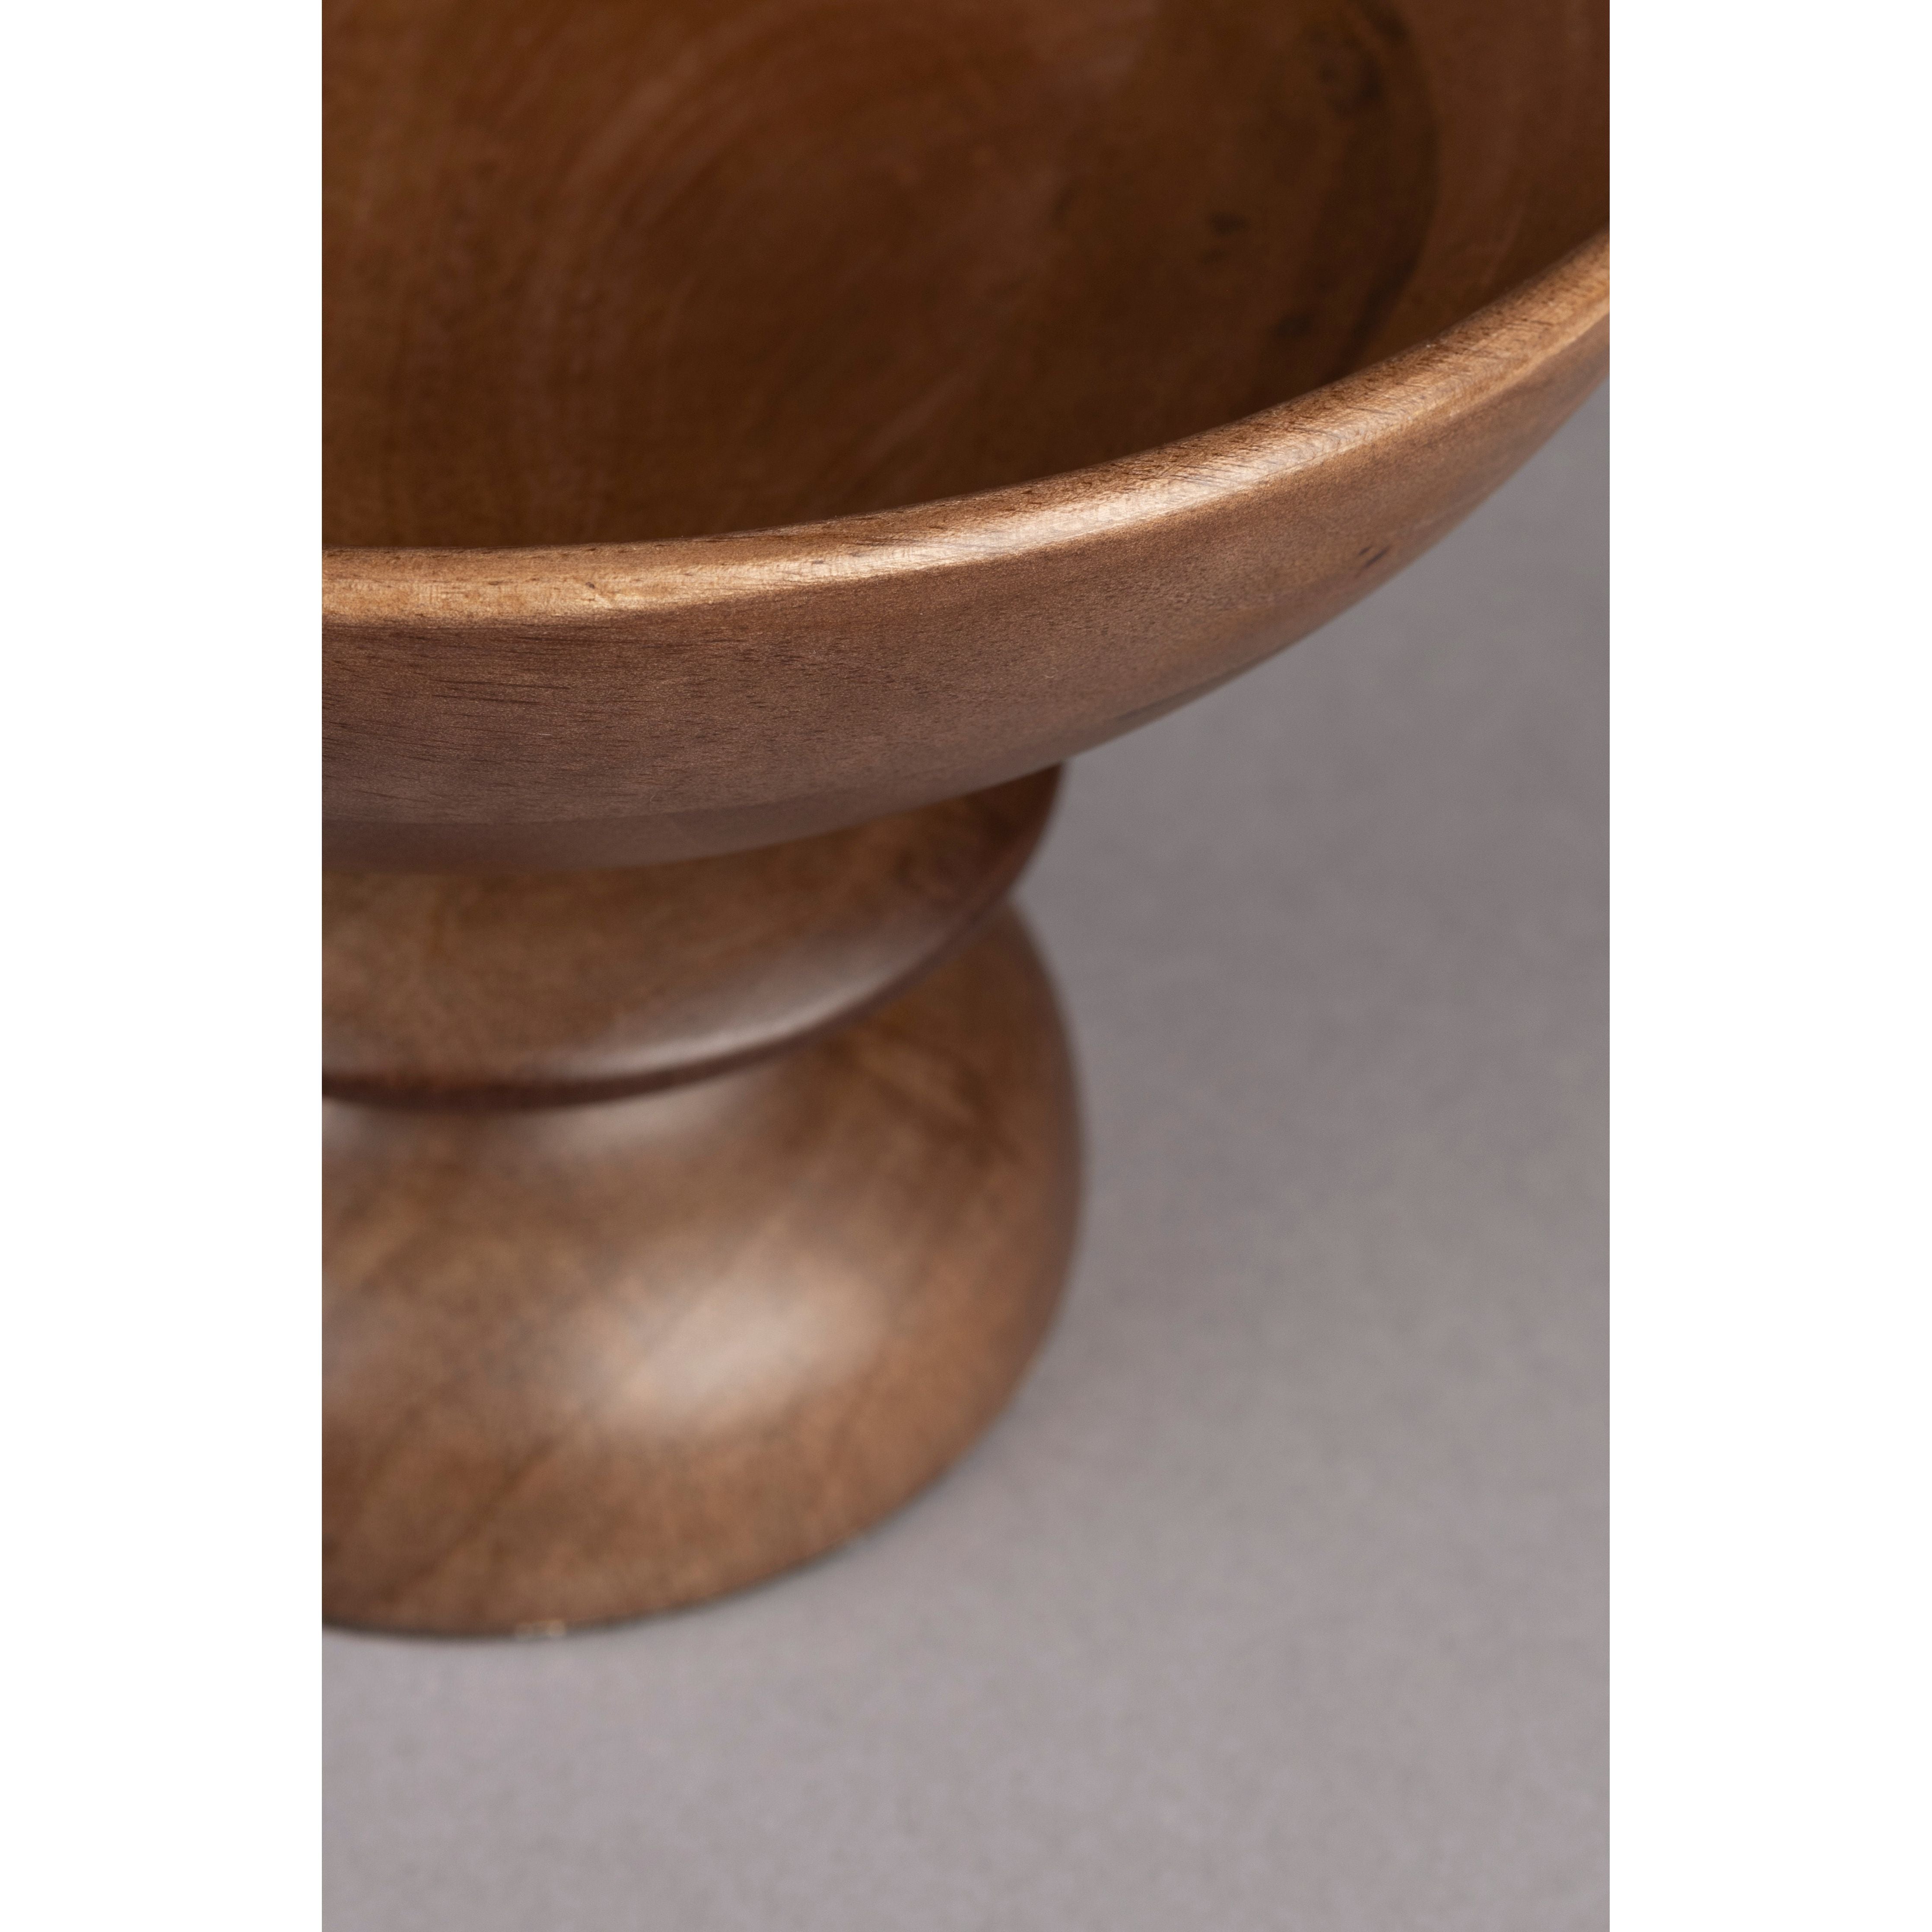 Wooden bowl gwen m